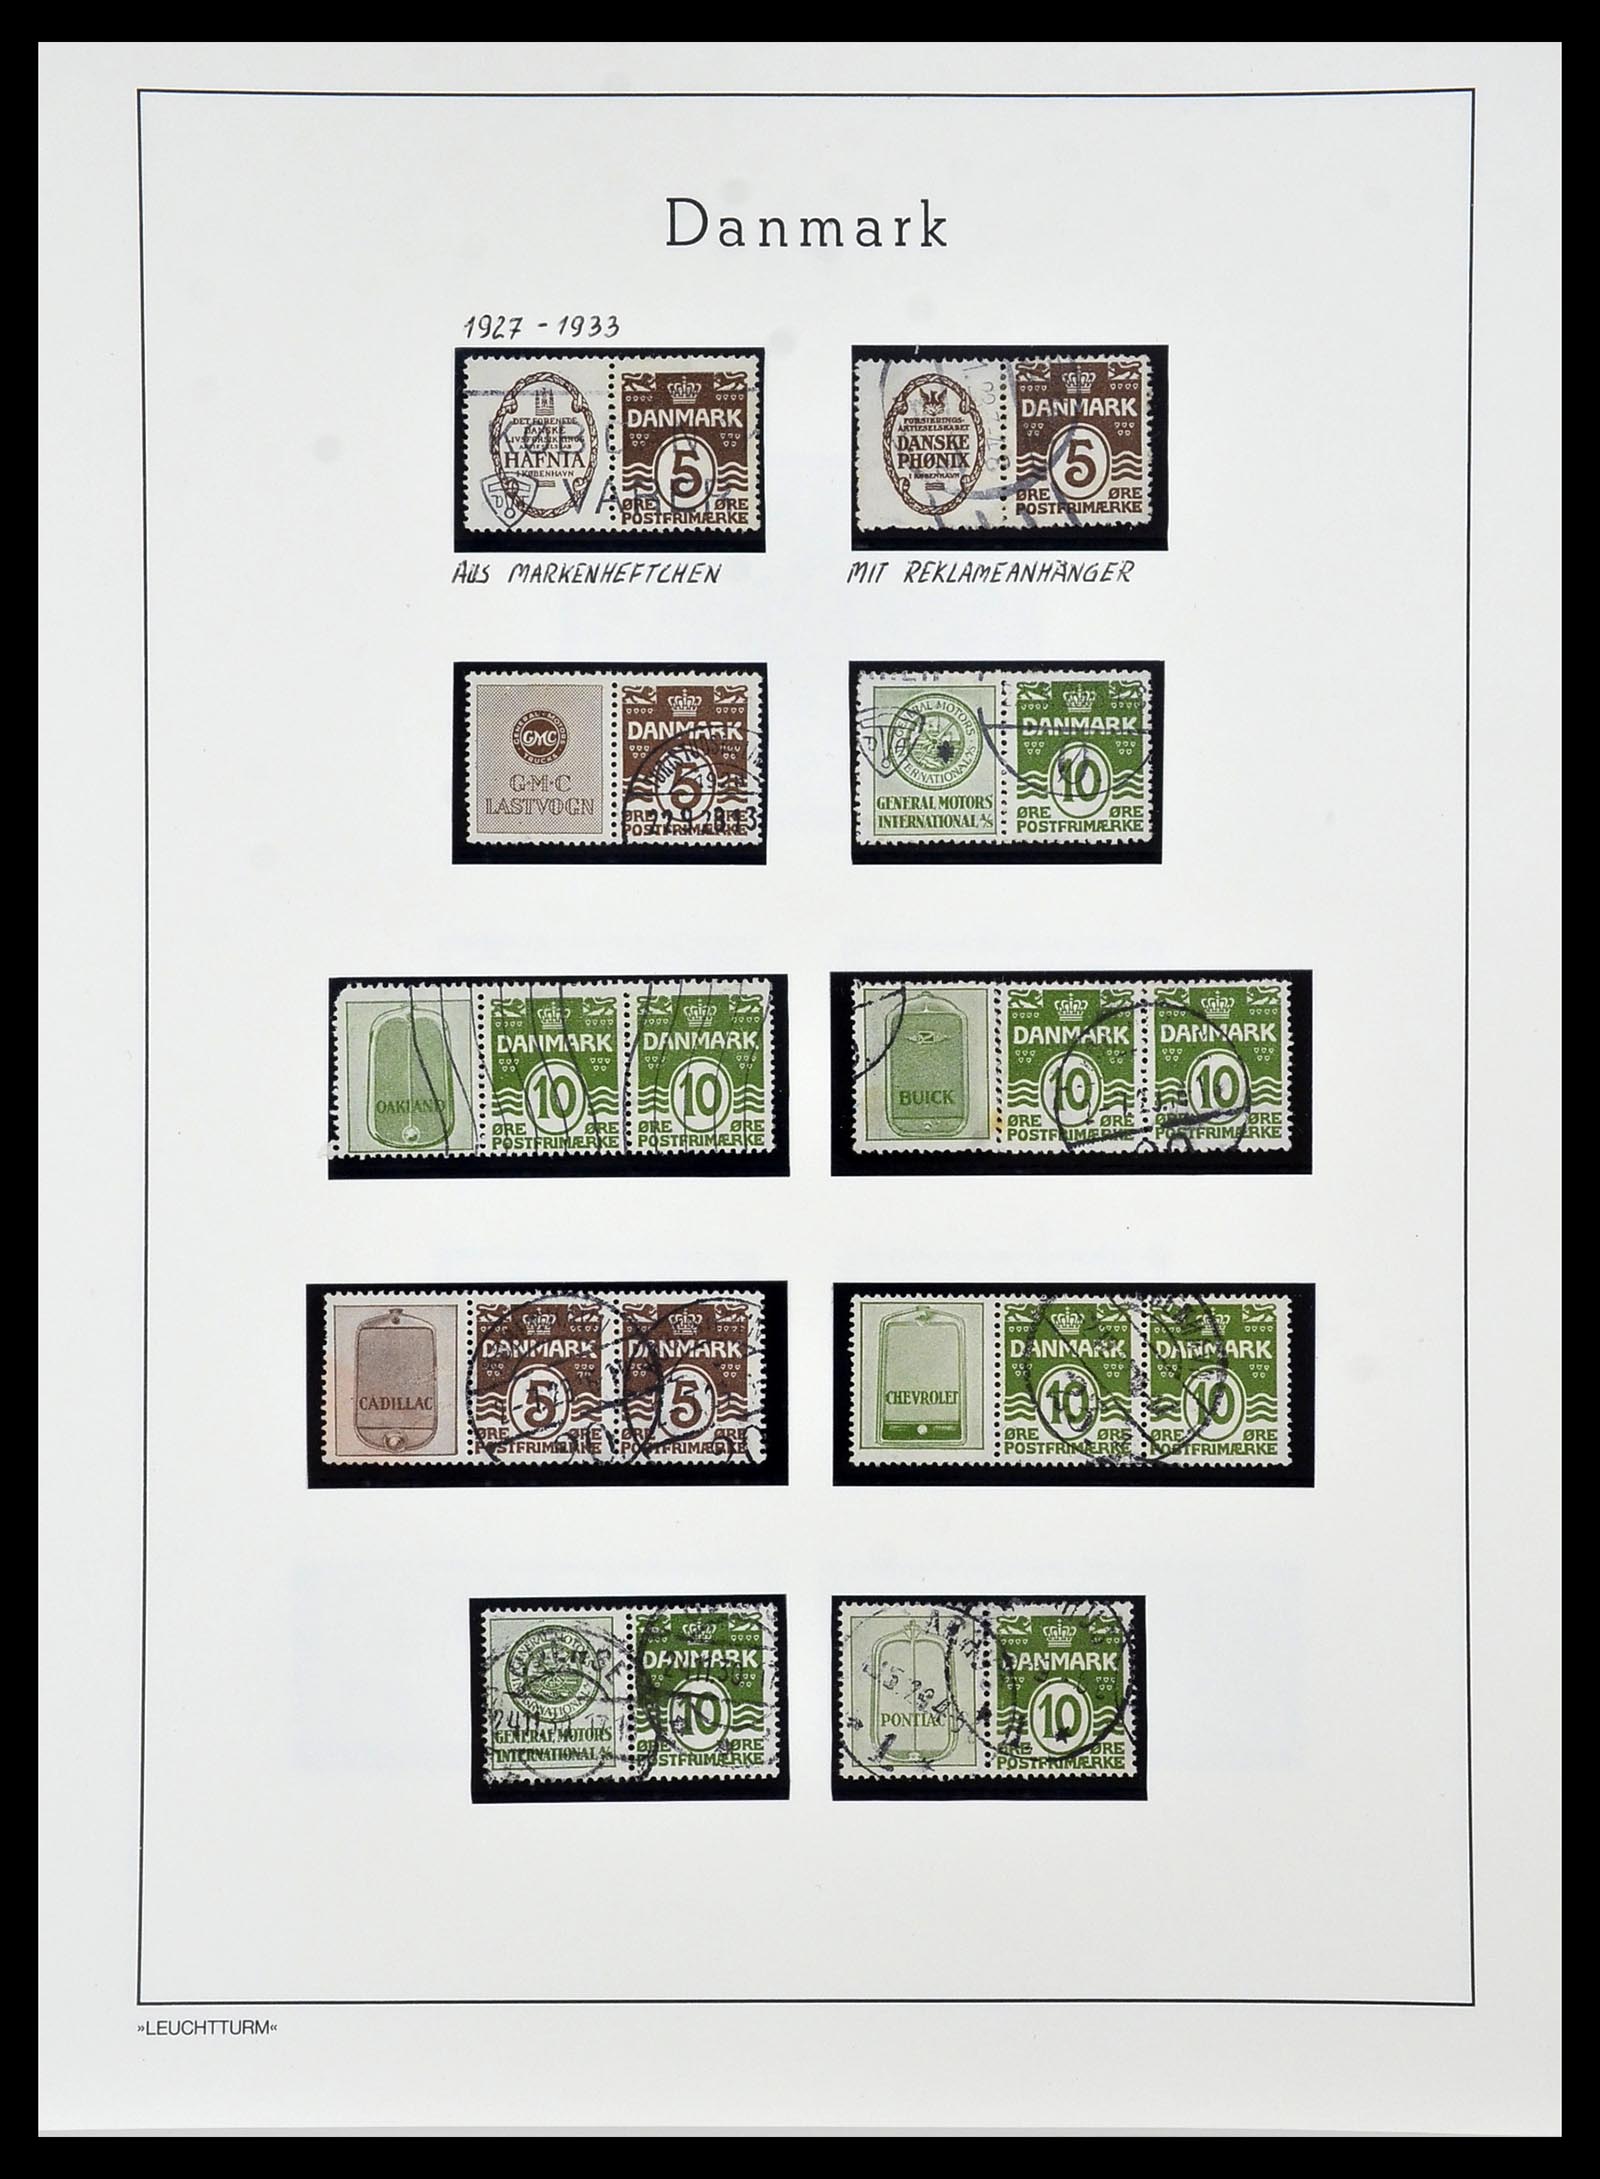 34099 003 - Postzegelverzameling 34099 Denemarken combinaties 1919-1933.